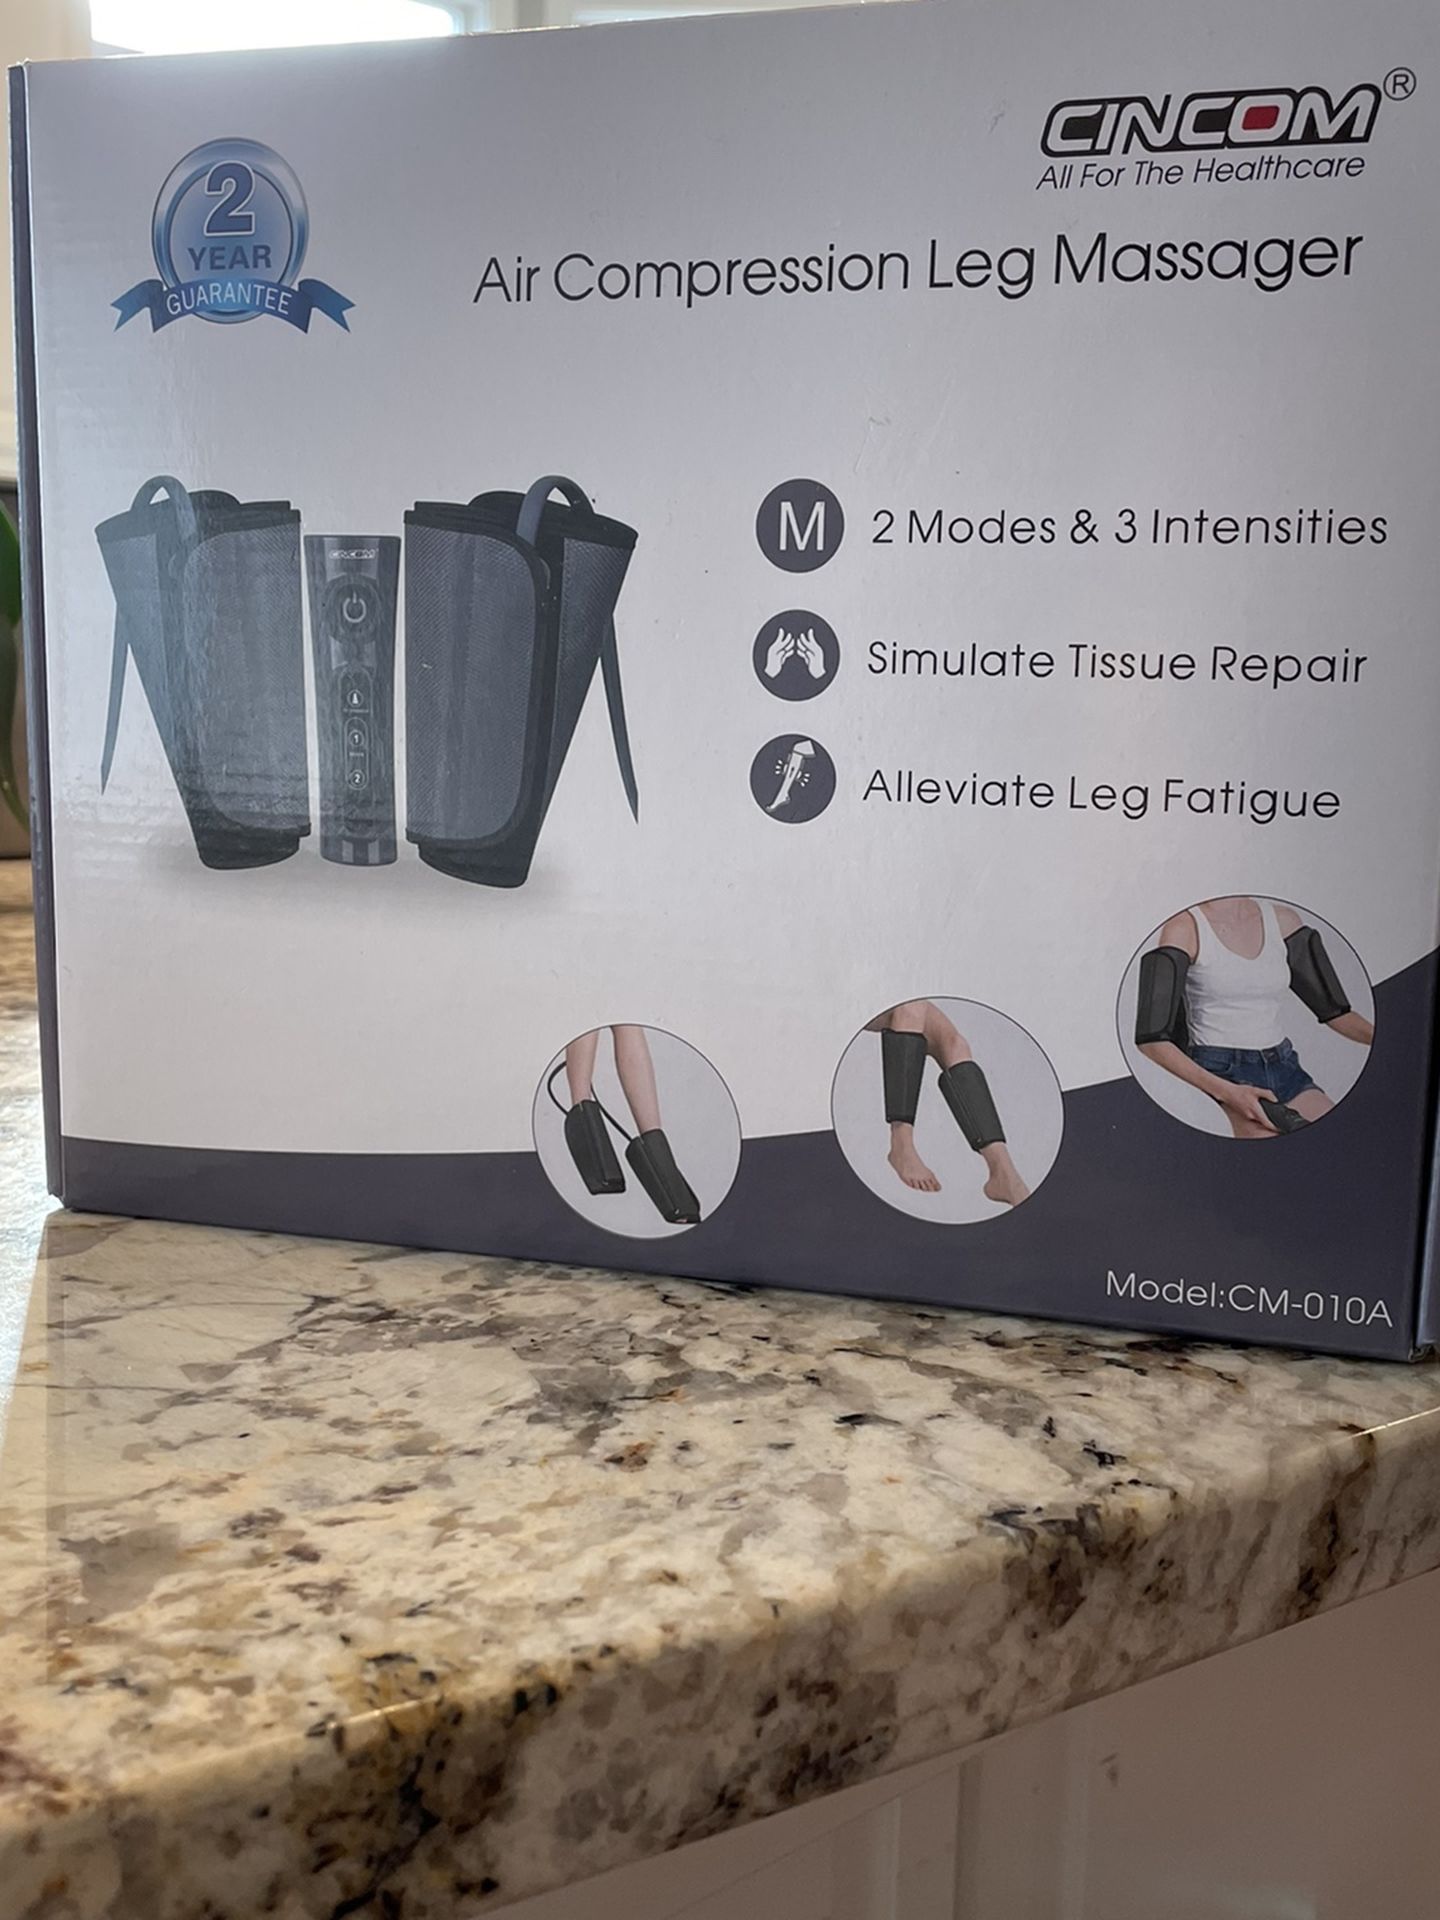 Air compression leg massager